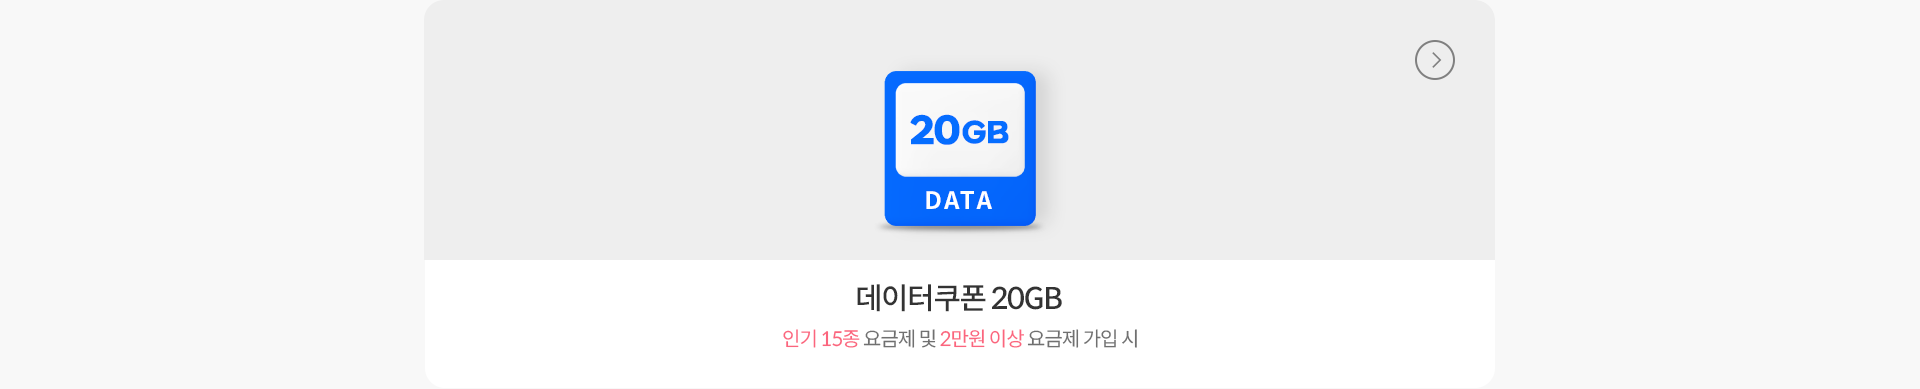 데이터쿠폰 20GB - 인기 15종 요금제 및 2만원 이상 요금제 가입 시